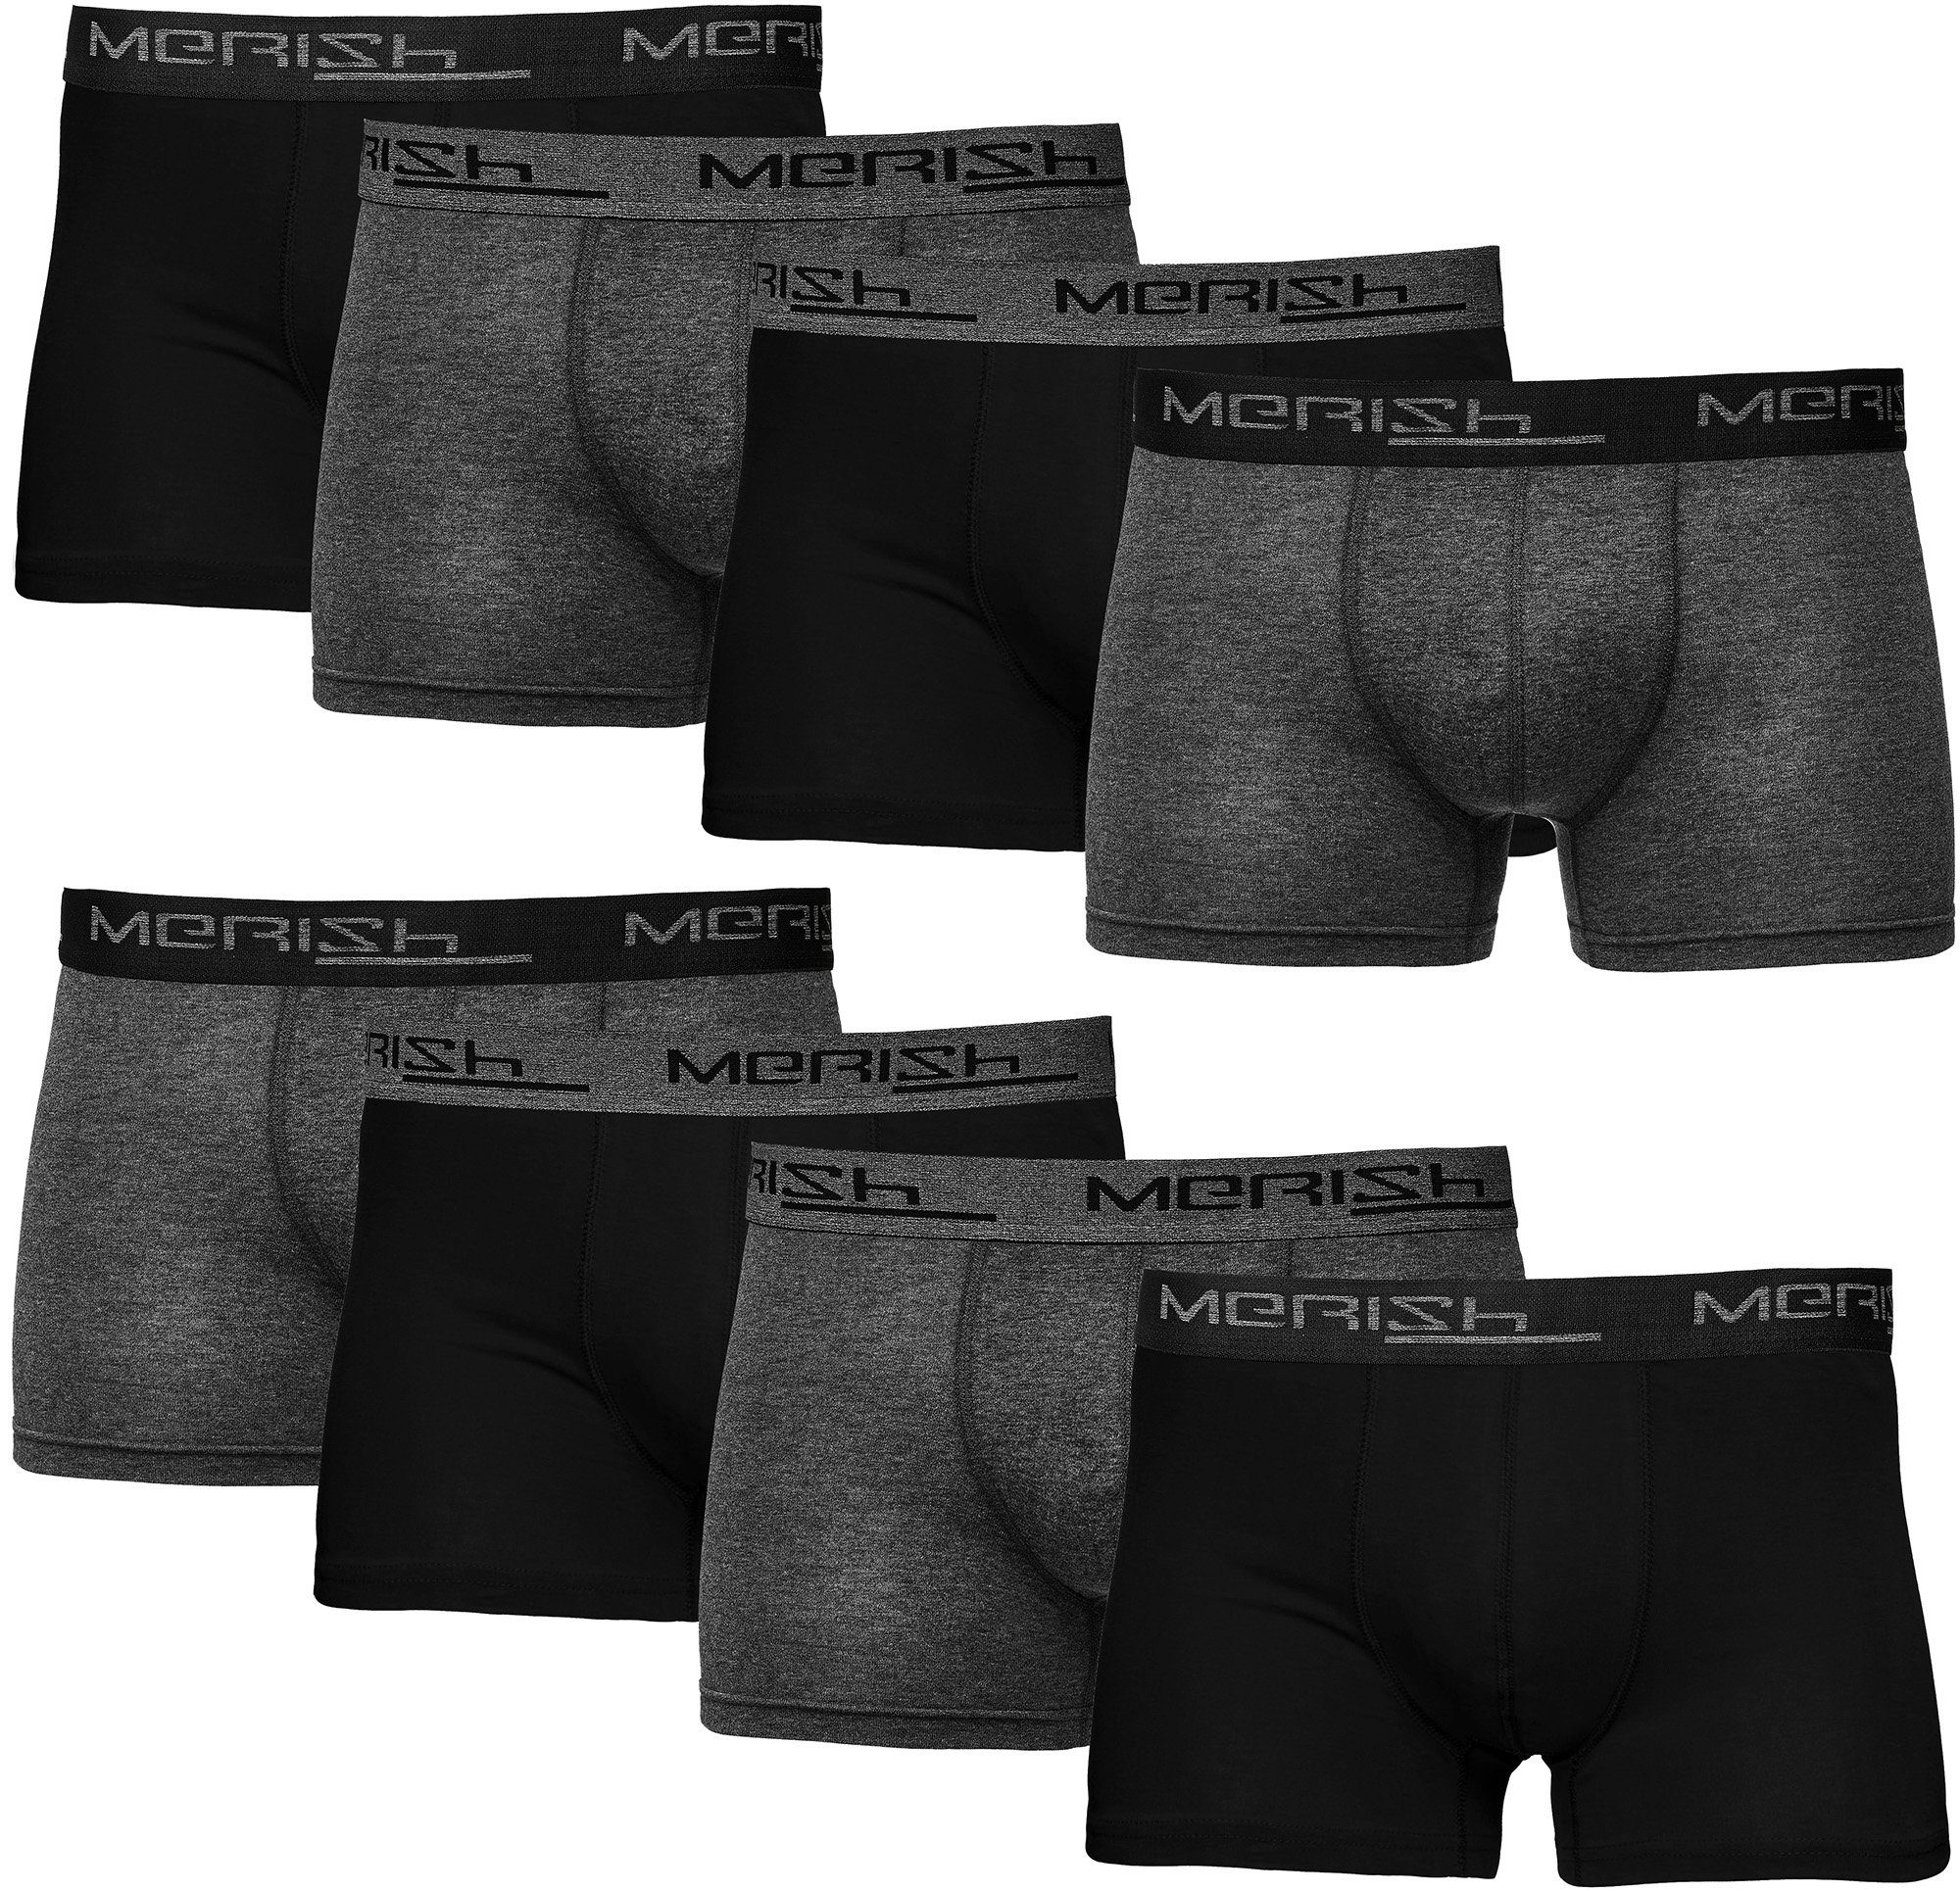 MERISH Boxershorts Herren Männer Unterhosen Baumwolle Premium Qualität perfekte Passform (Vorteilspack, 8er-Pack) S - 7XL 216e-anthrazit/schwarz | Boxershorts